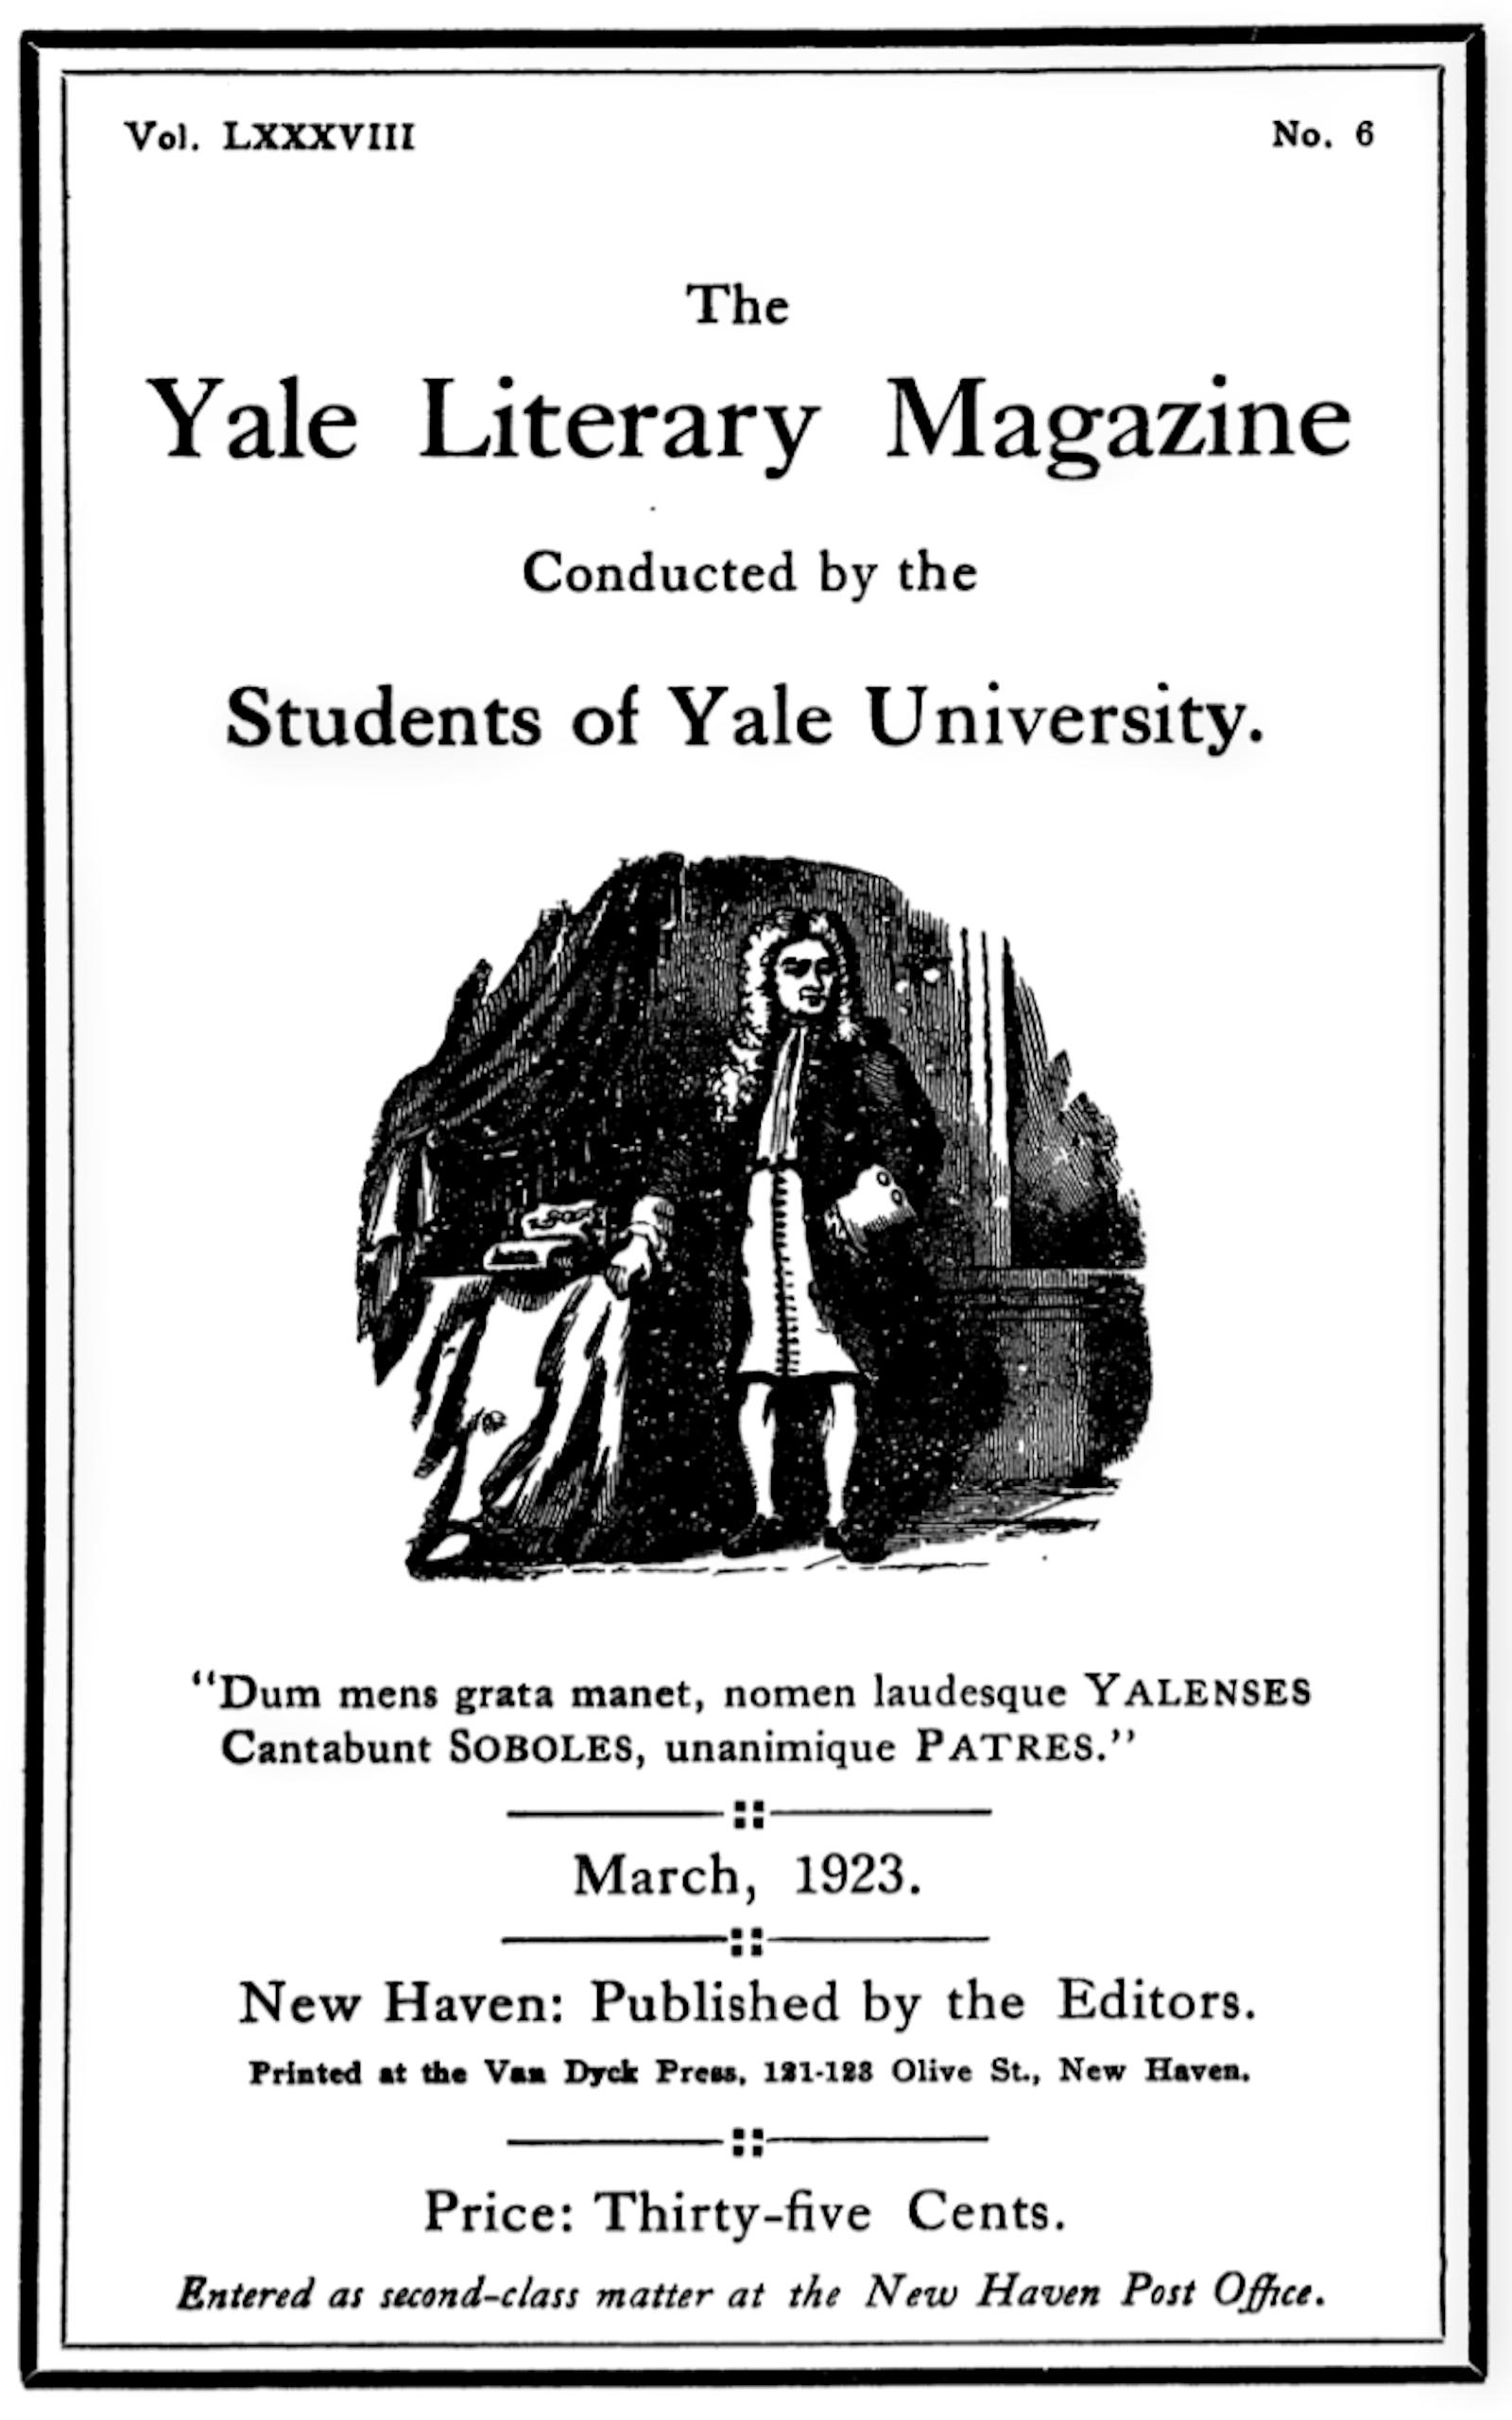 The Yale Literary Magazine (Vol. LXXXVIII, No. 6, March 1923)